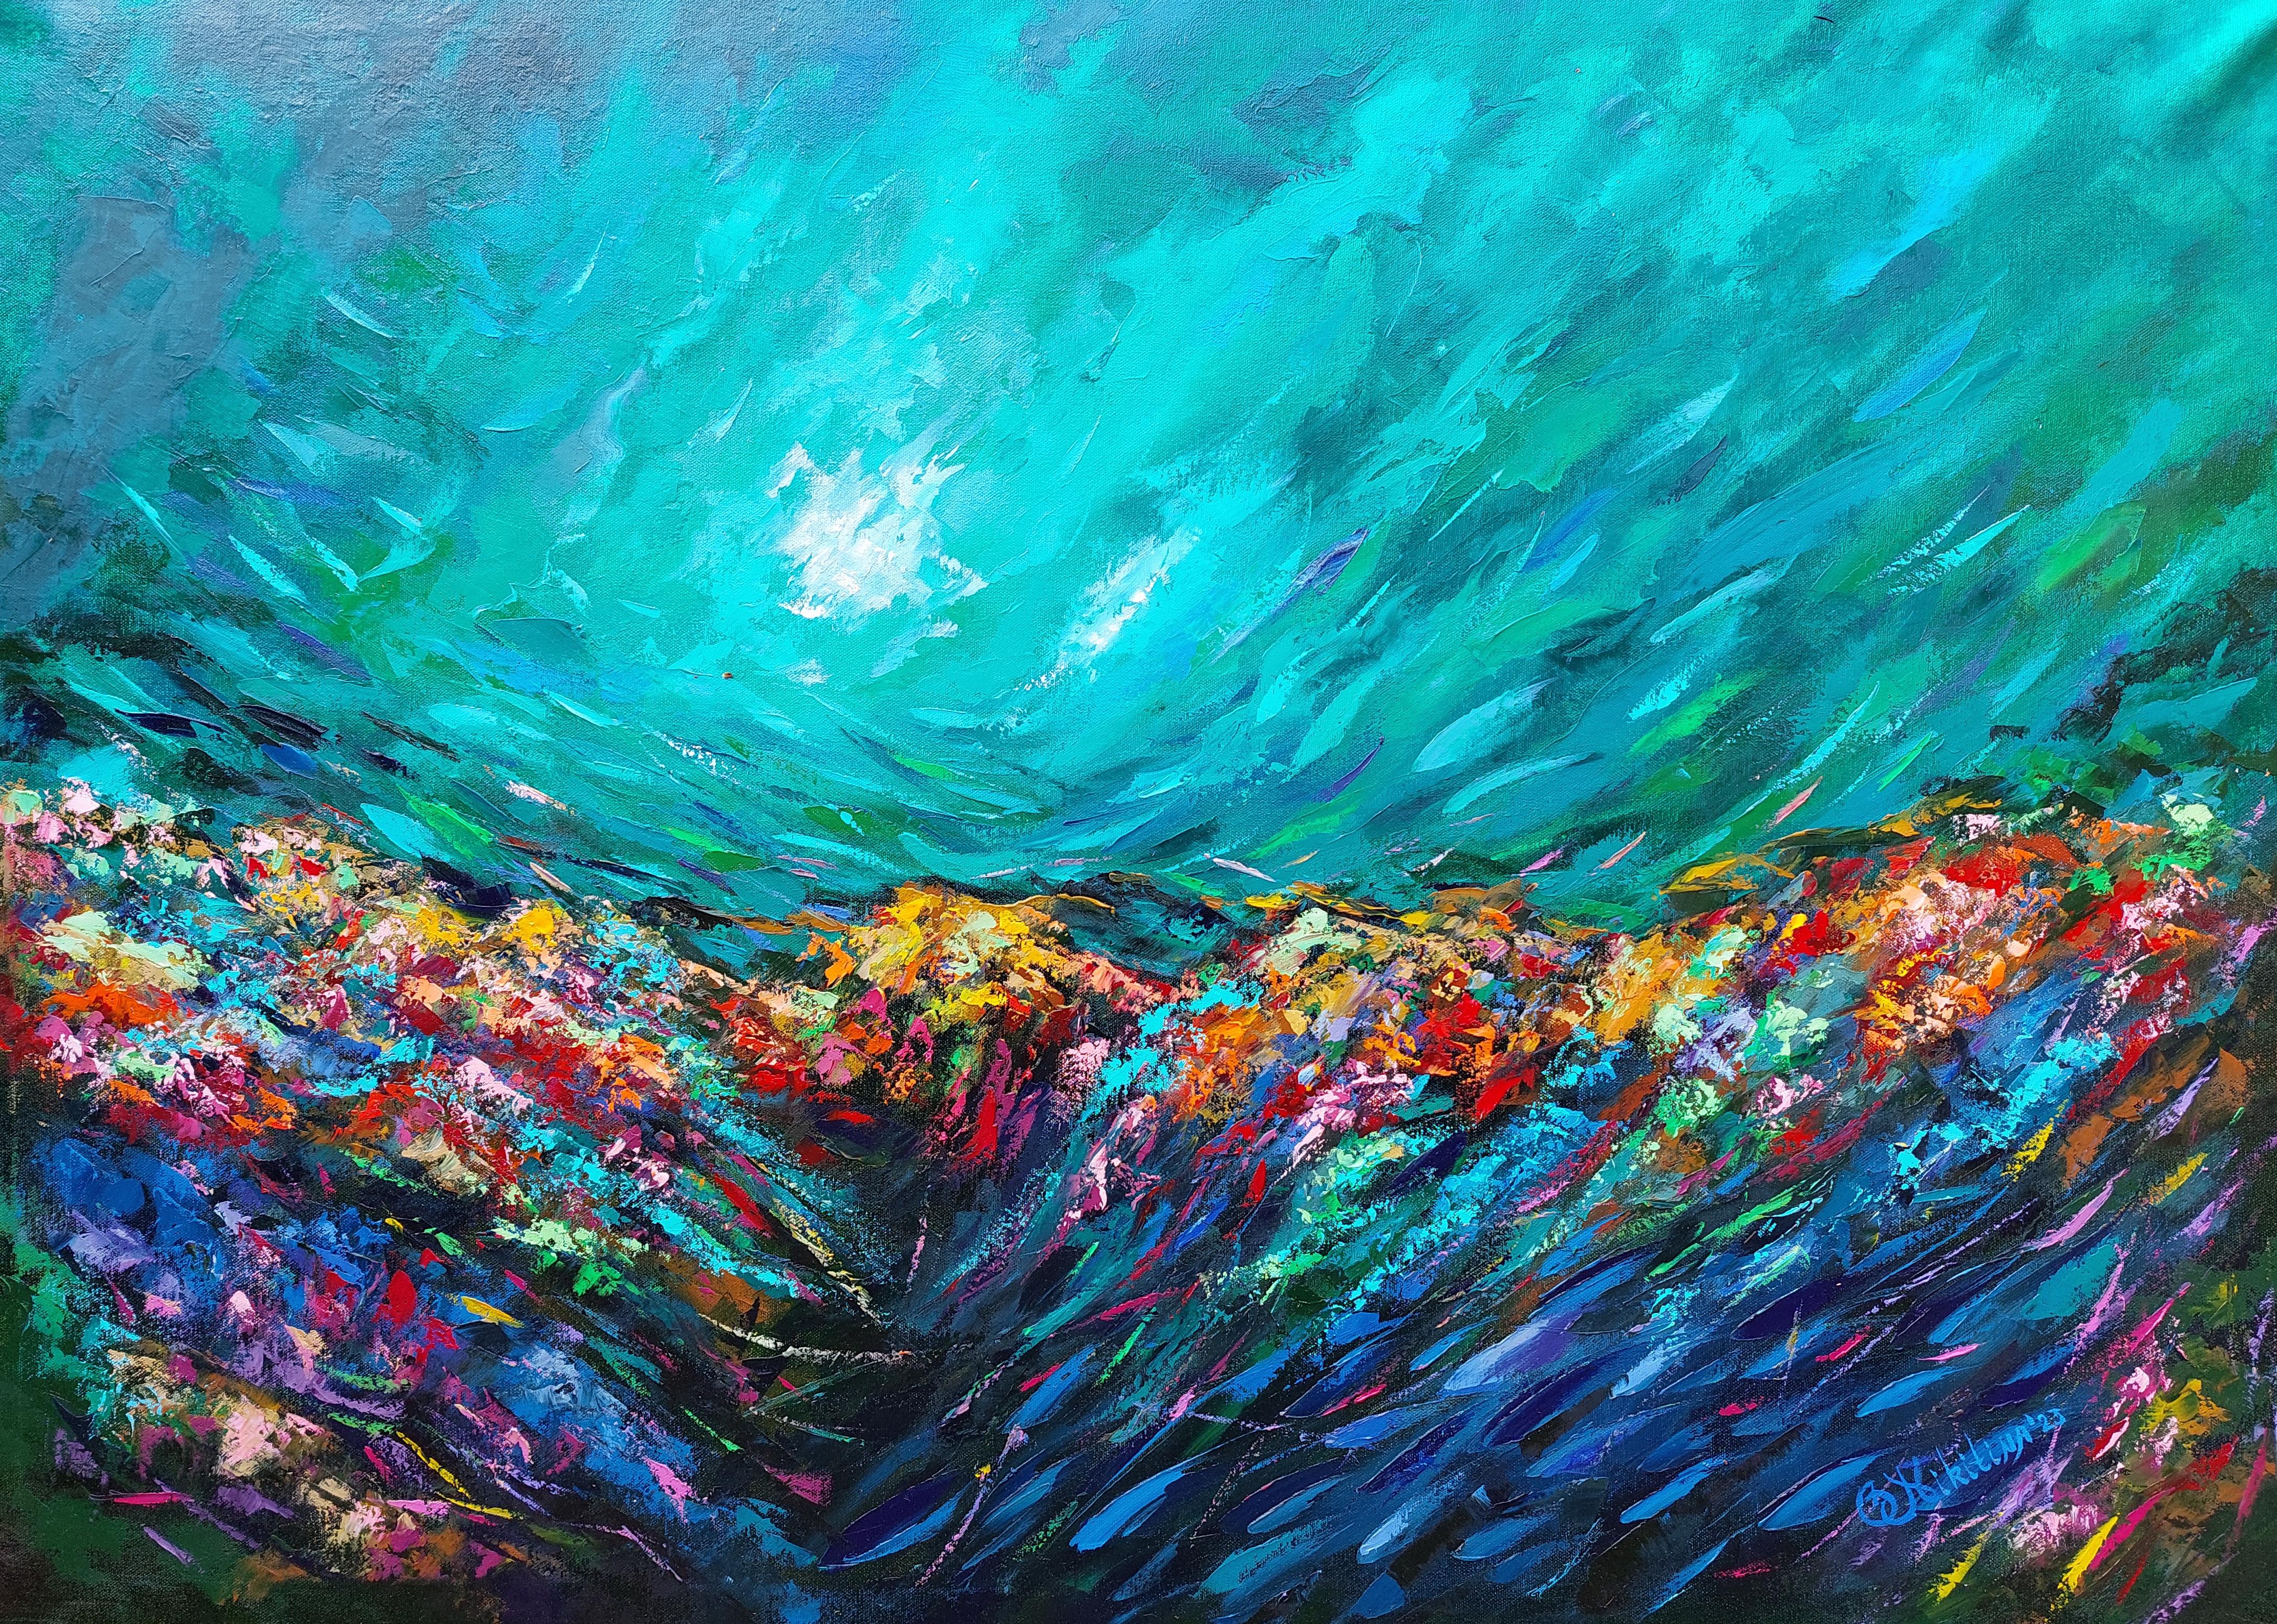 Tropical Coral Reef Painting Ocean Art Underwater Seascape Original Painting